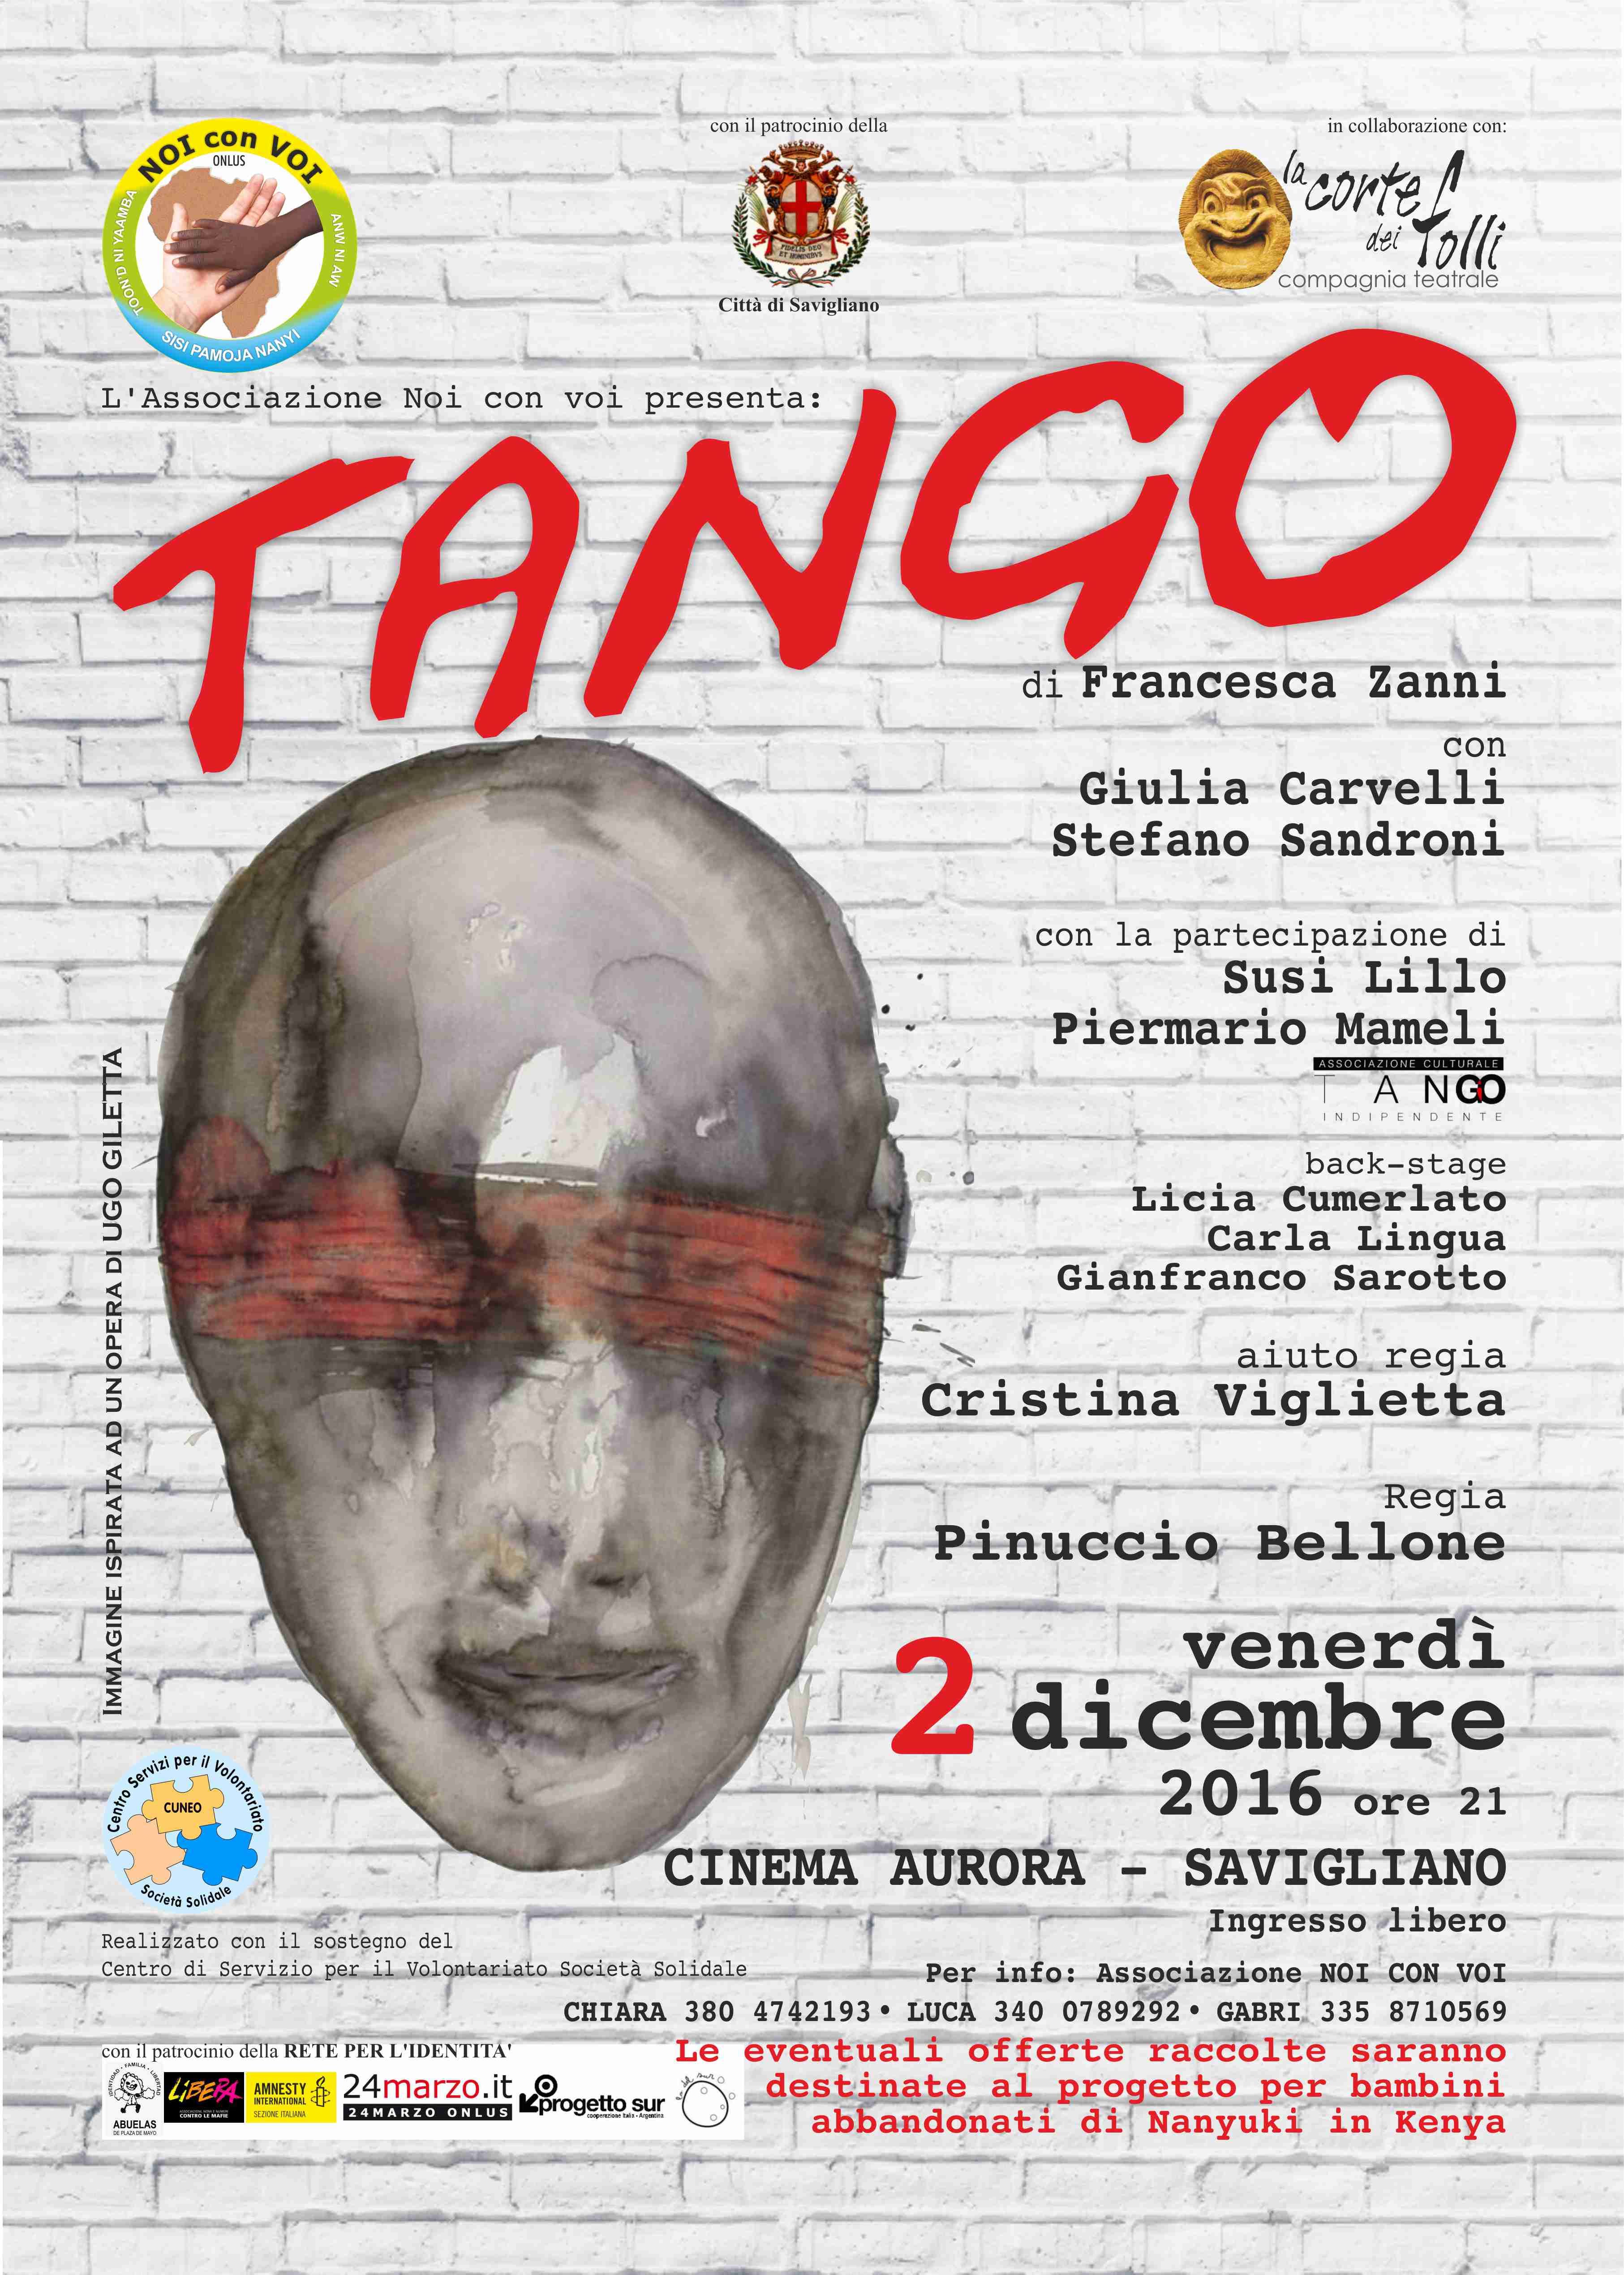 2 dicembre 2016: Spettacolo teatrale "Tango" 